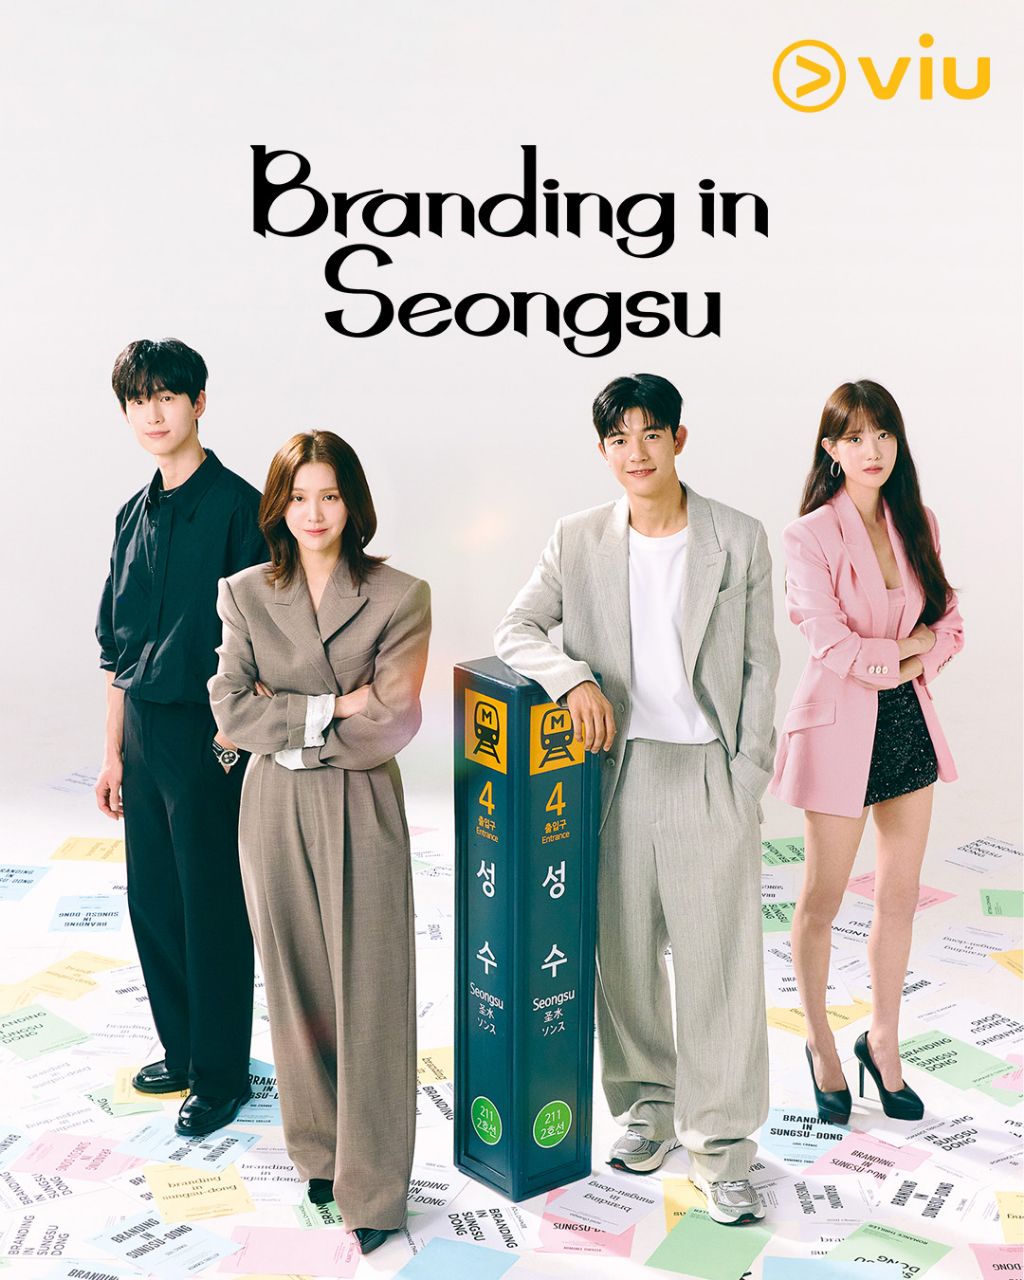 مسلسل العلامة التجارية في سيونغسو Branding in Seongsu الحلقة 9